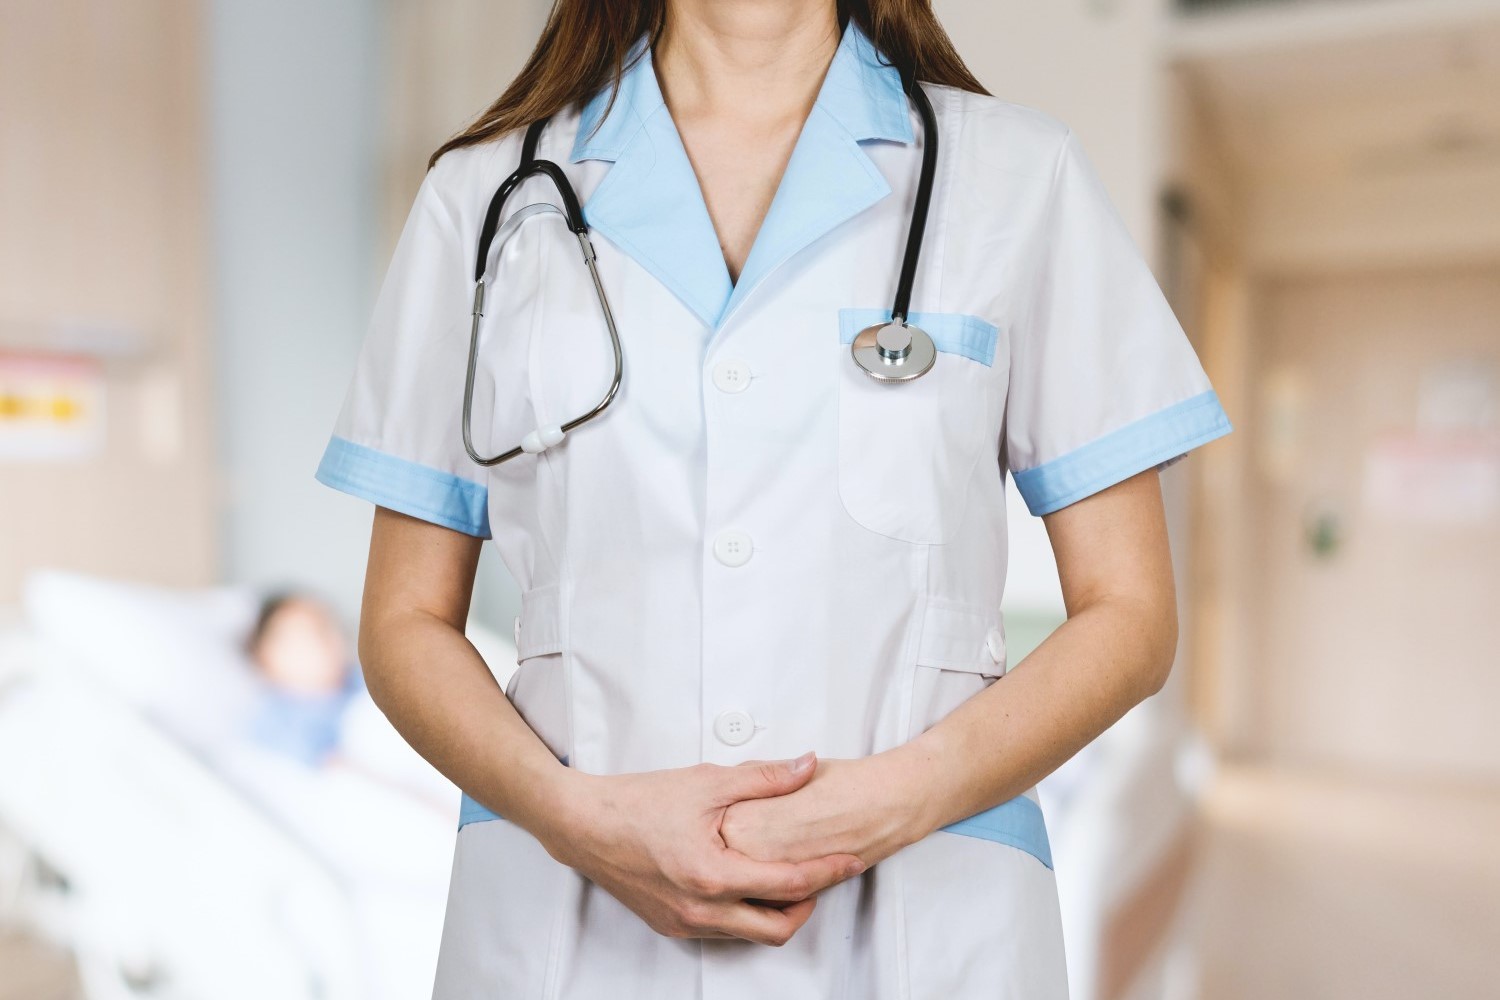 Female wearing Medical Uniform and stethoscope